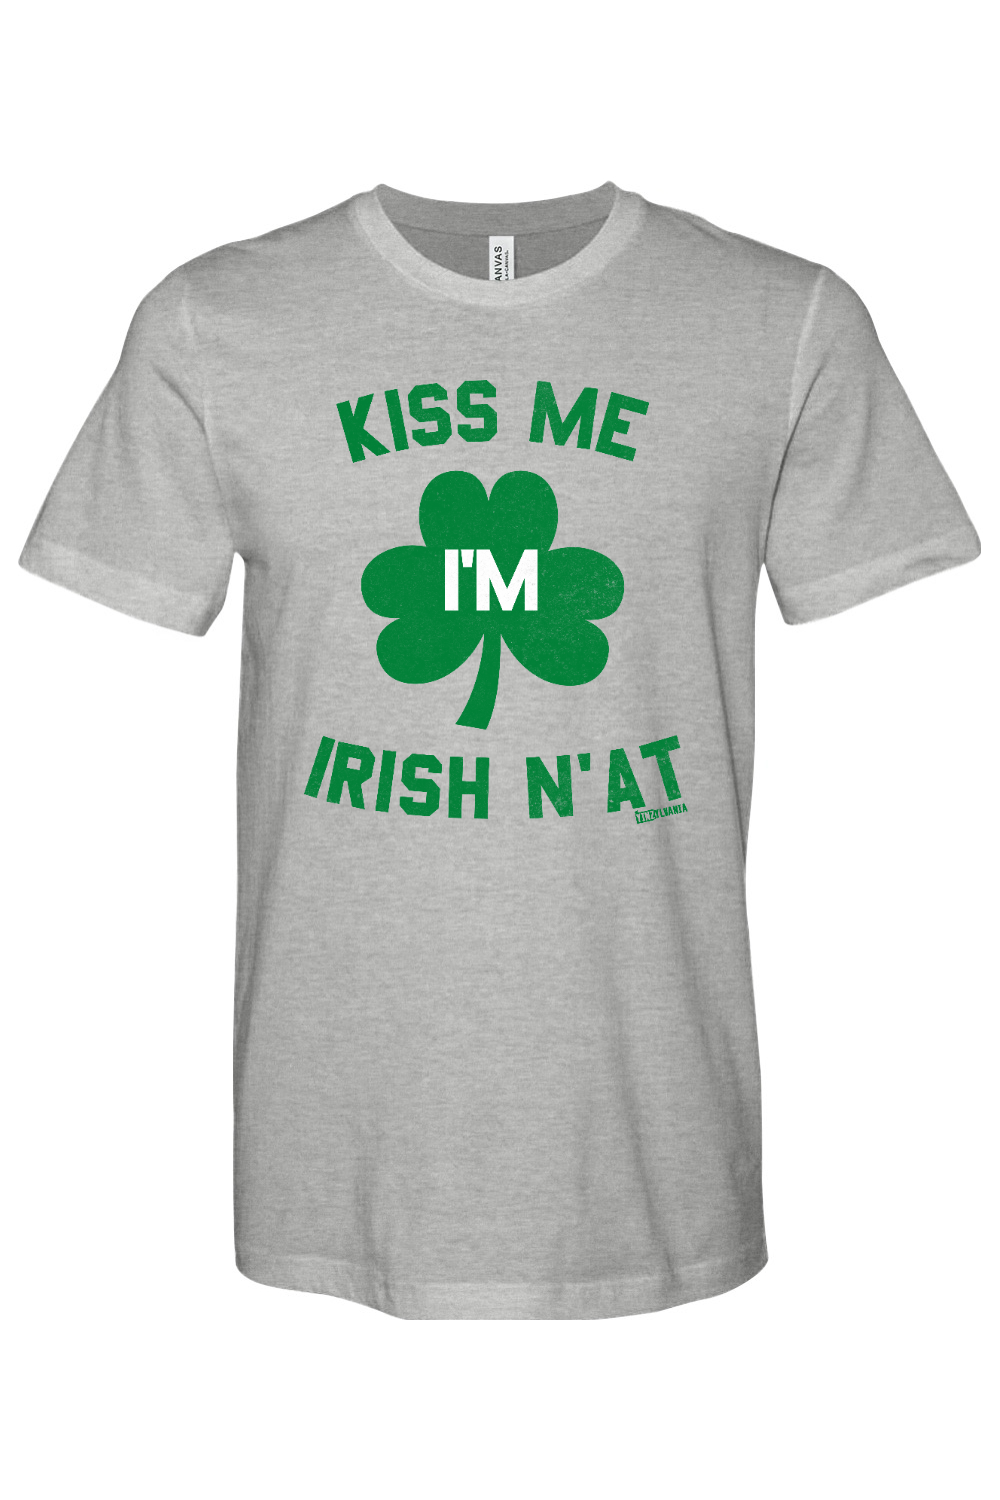 Kiss Me I'm Irish N'at - Yinzylvania